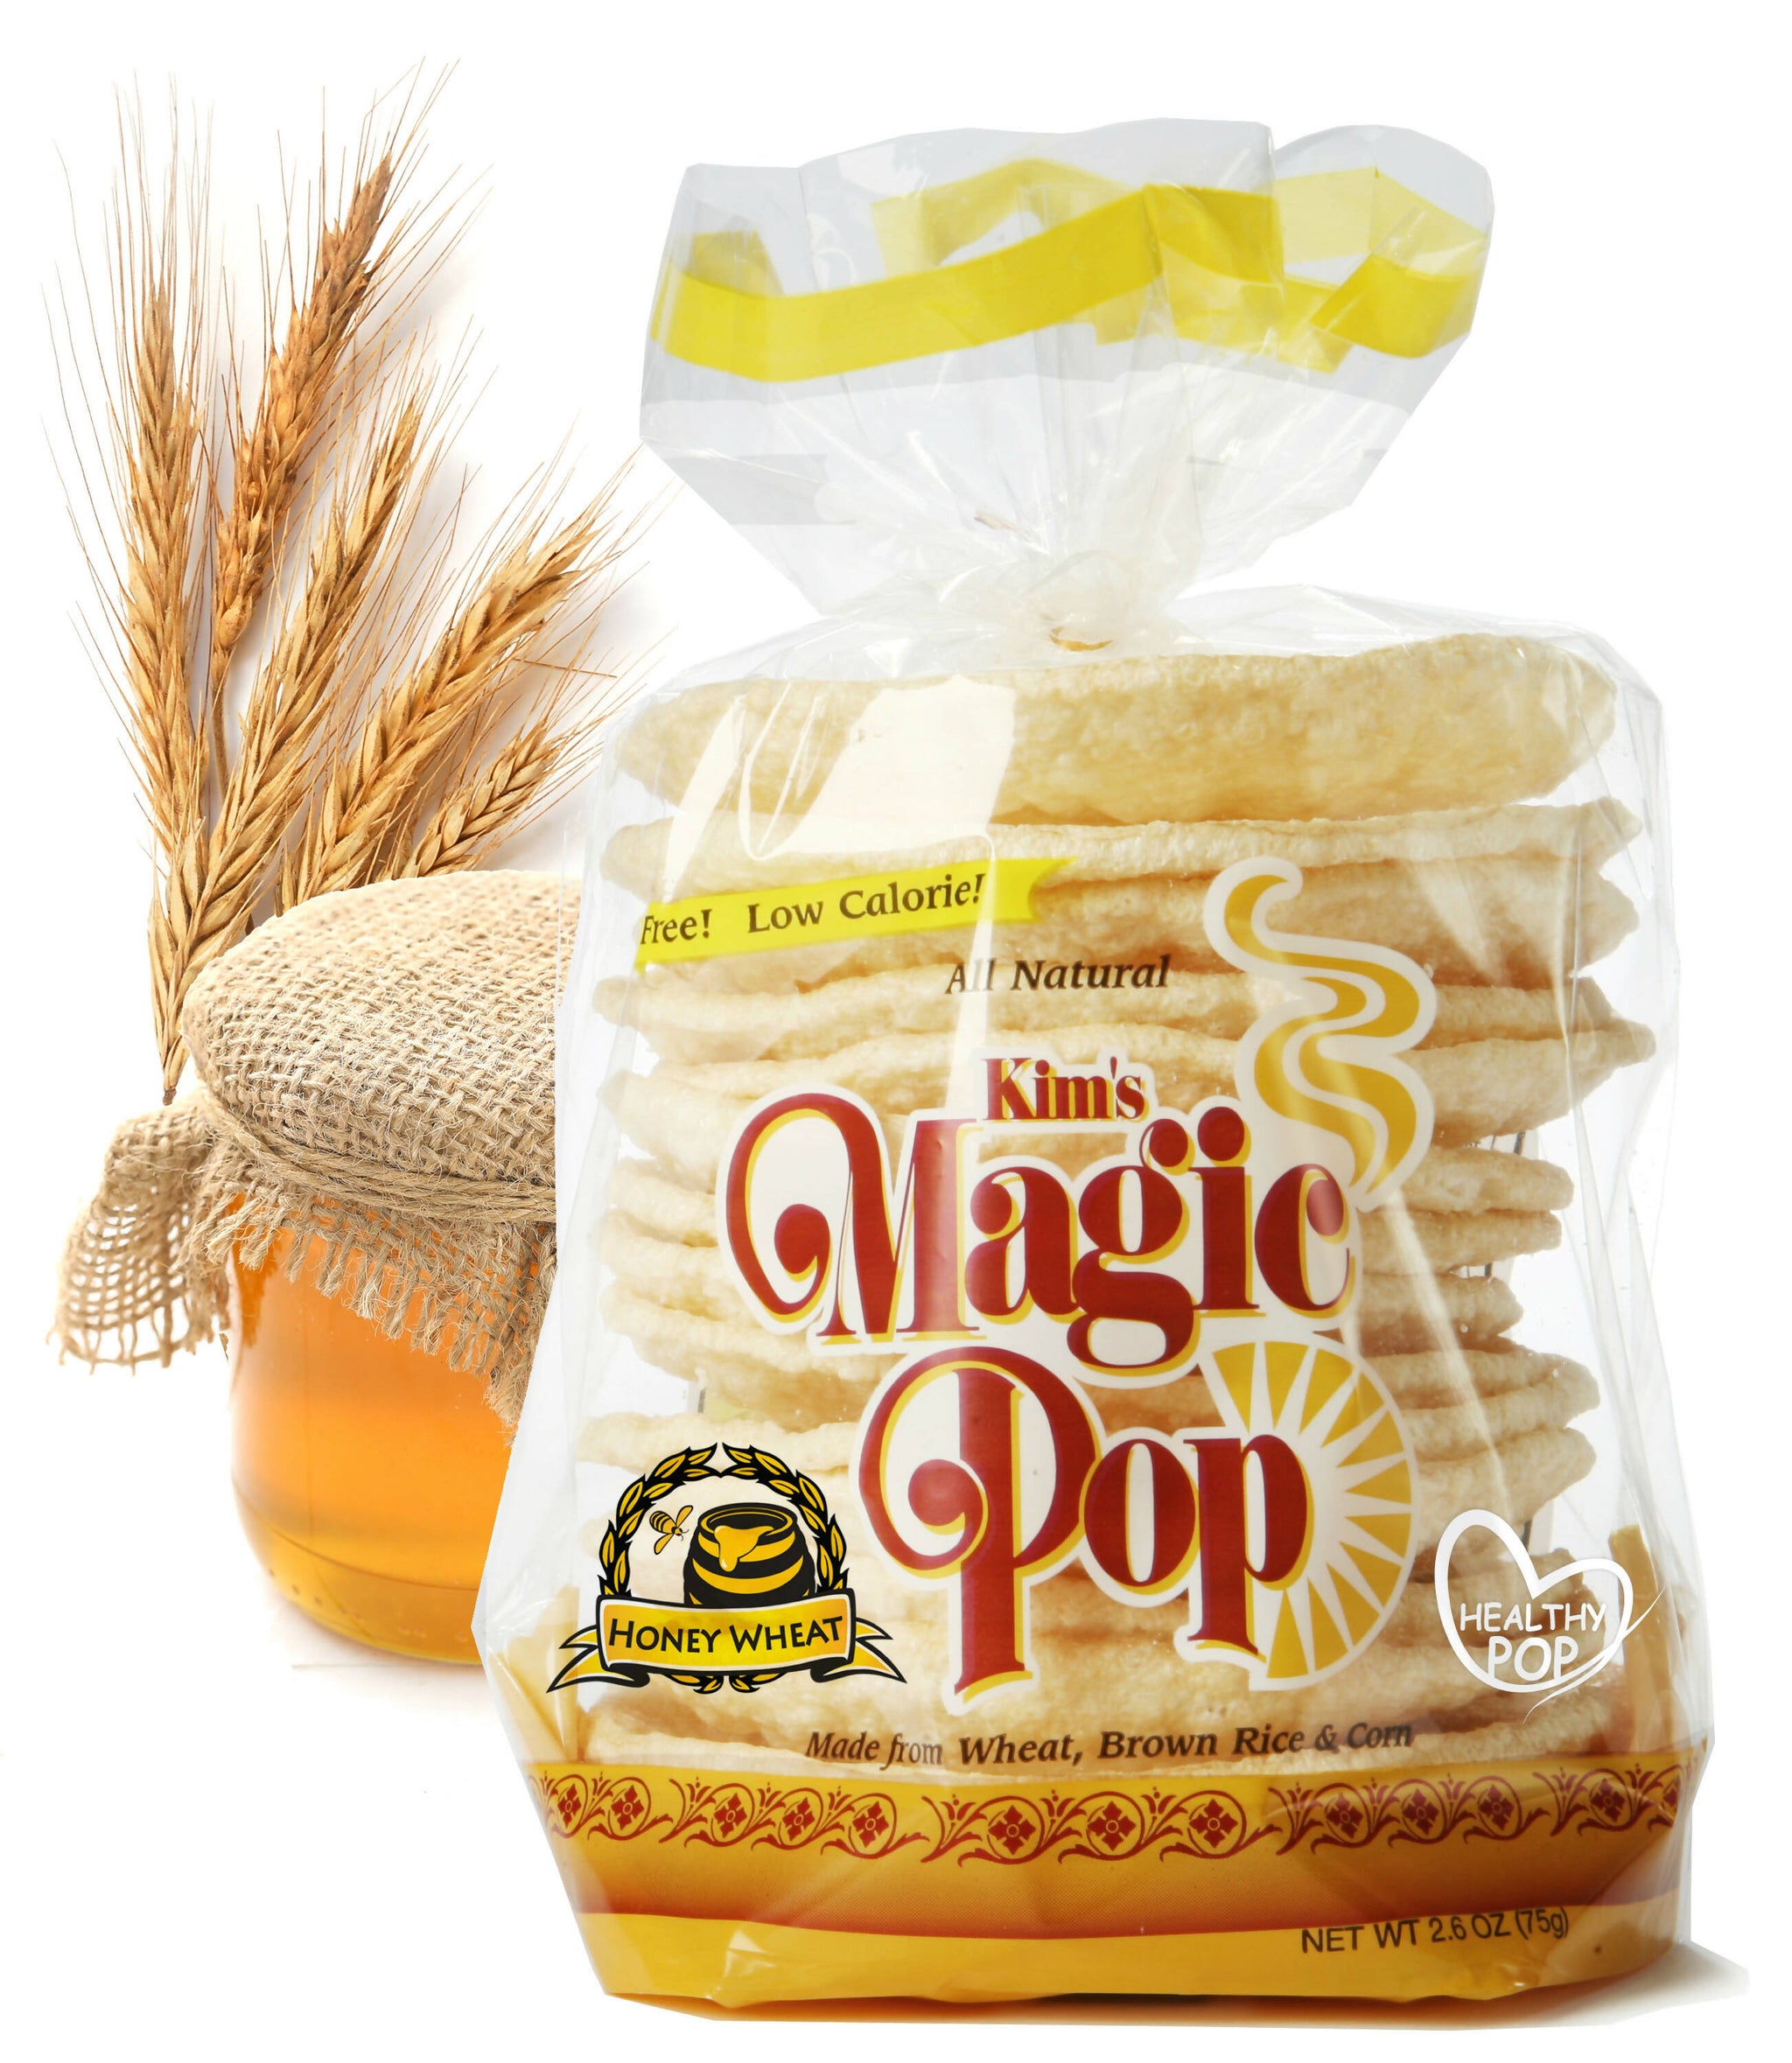 Kim's Magic Pop - Honey Wheat Flavor (12 Bags)